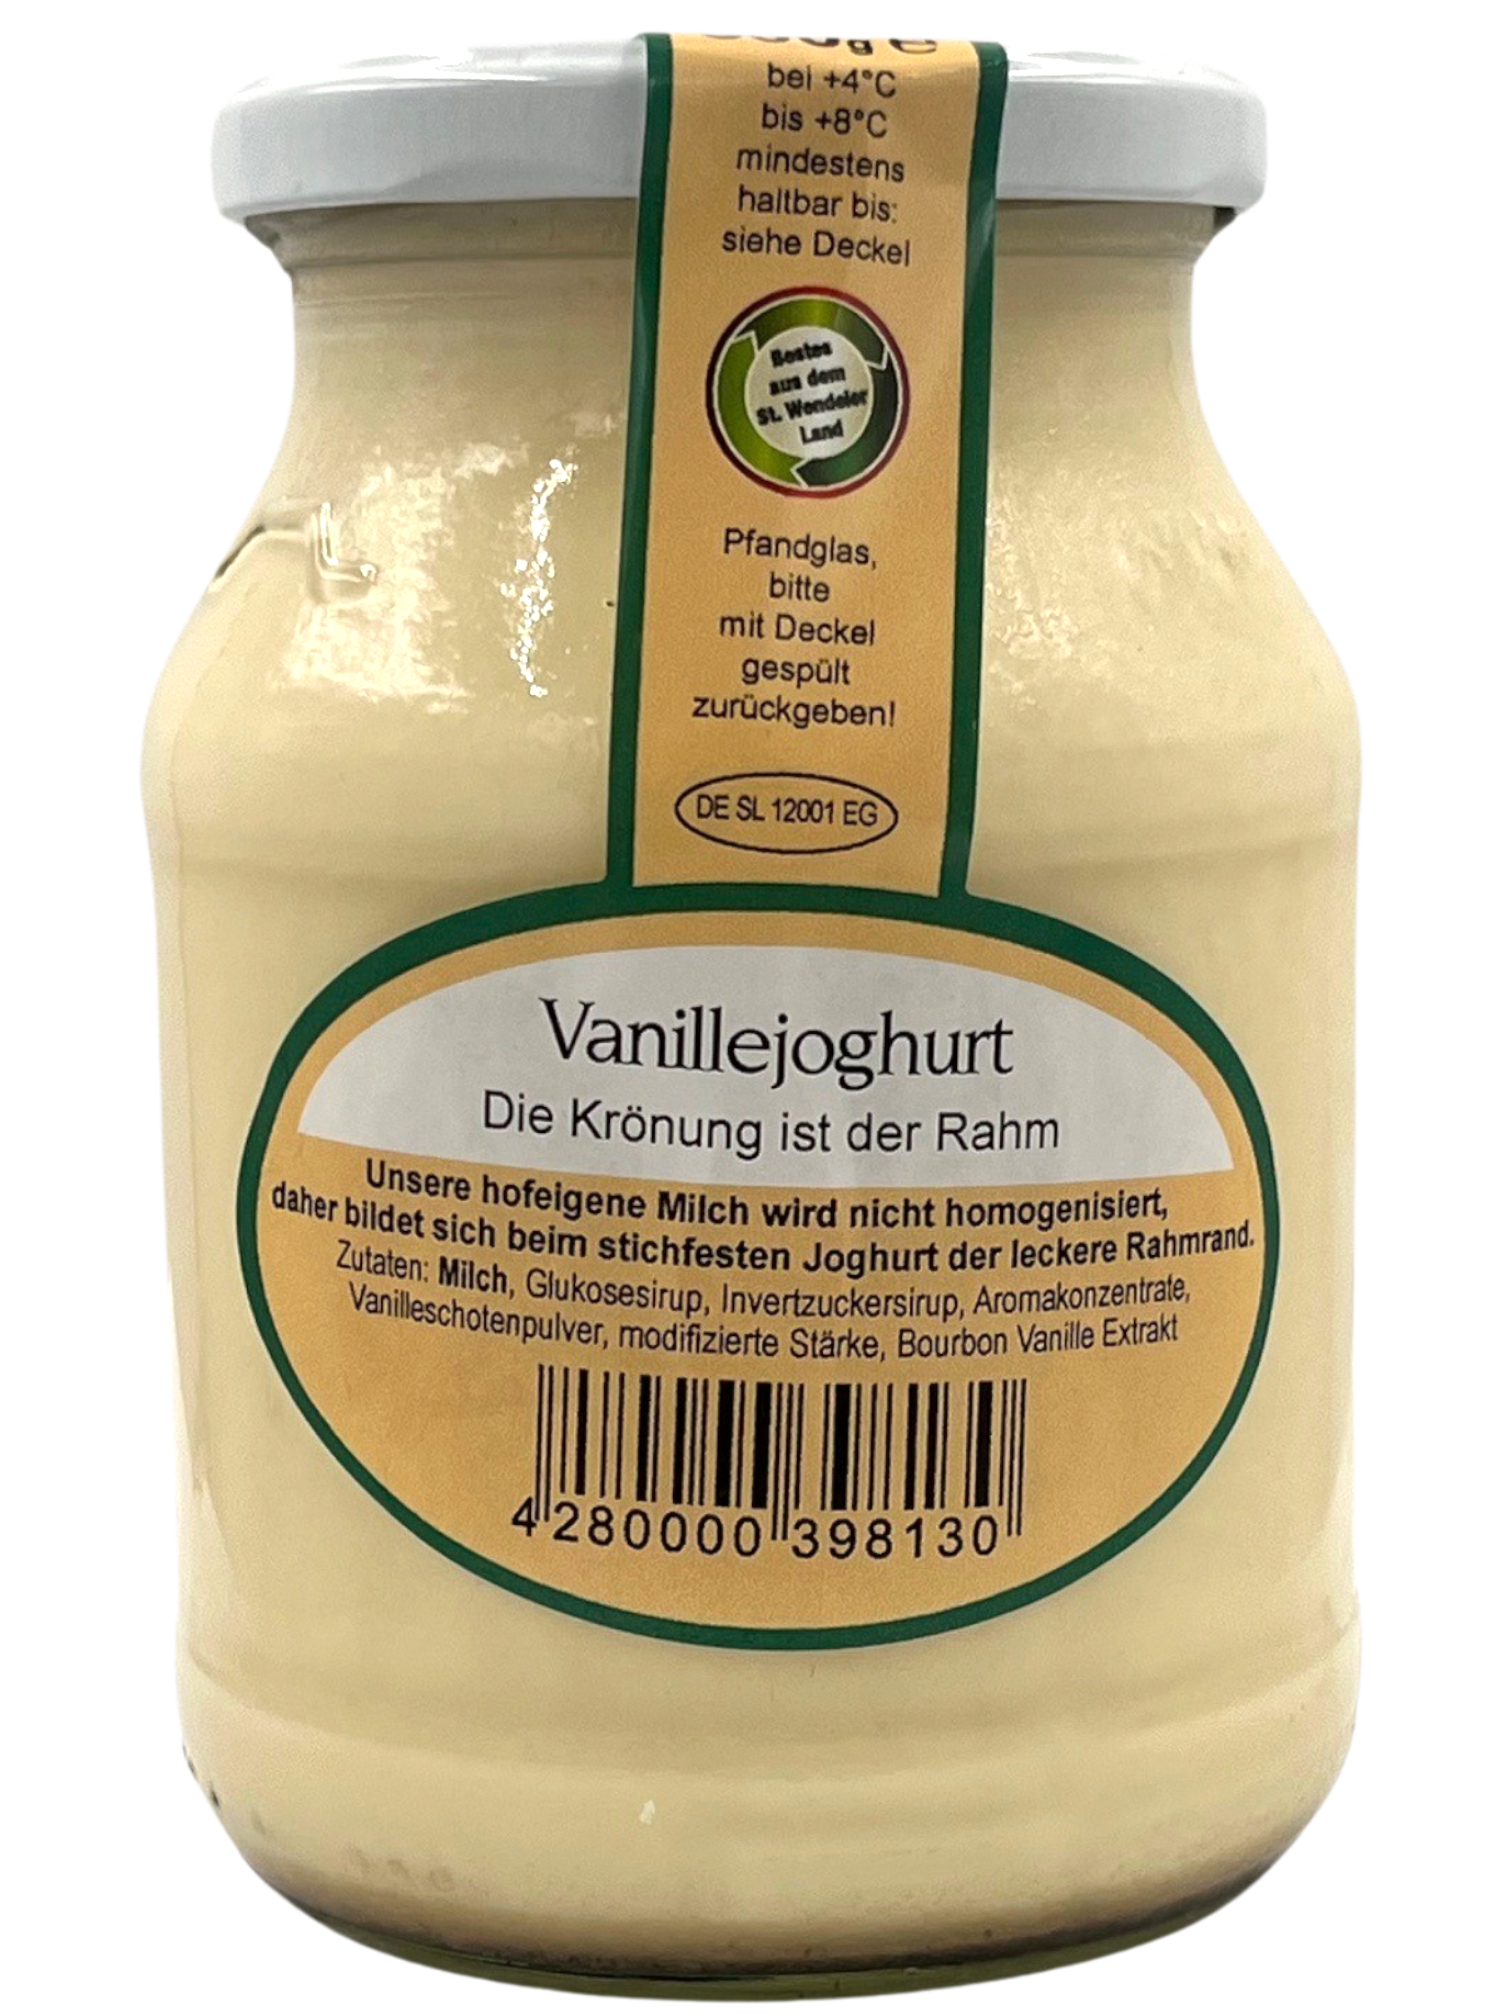 Joho-Joghurt Vanille 500g im Glas (mit leckerem Rahmrand wie hausgemacht)